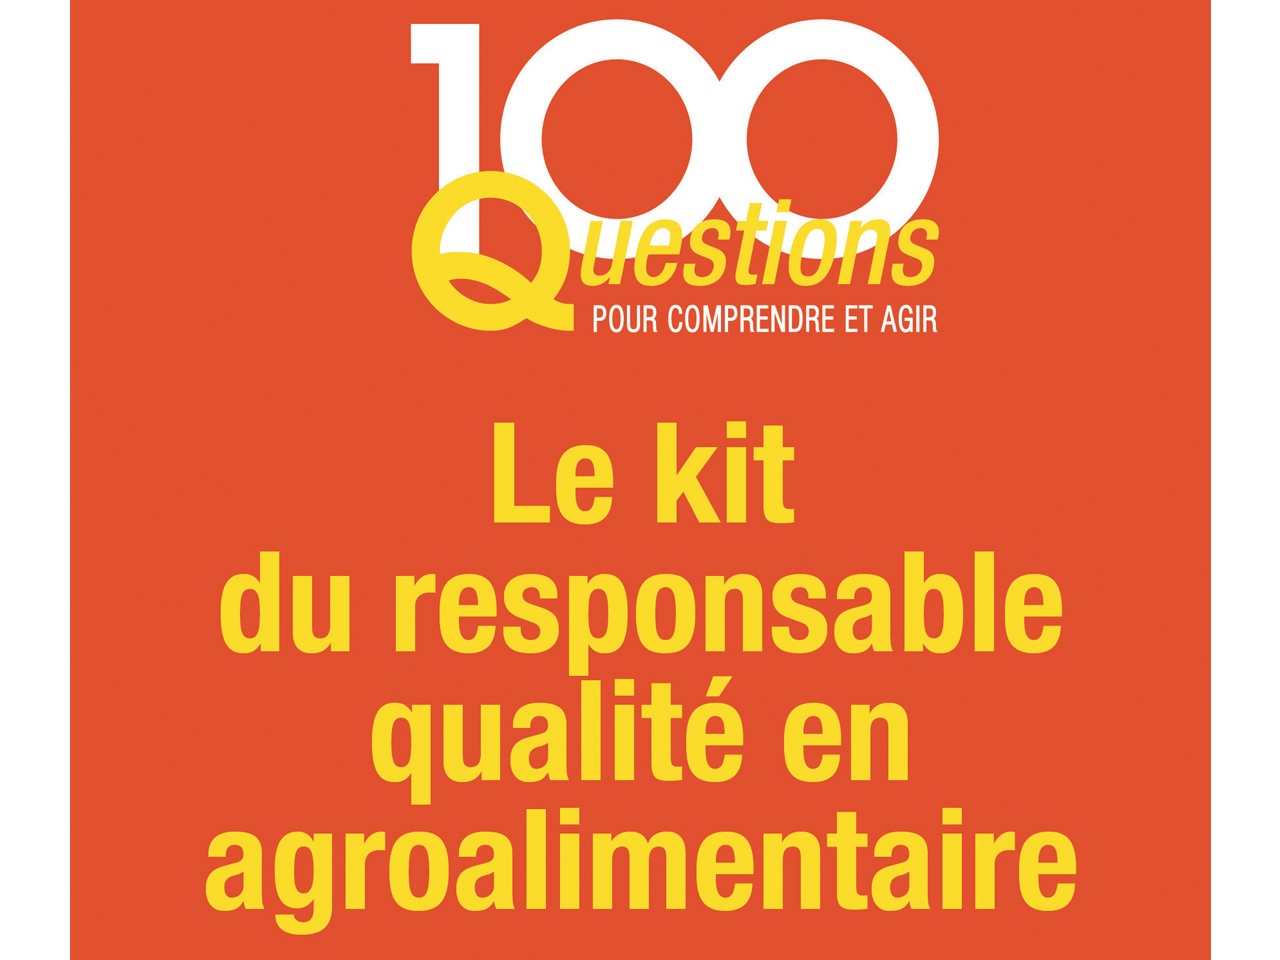 AFNOR éditions publie « Le Kit du responsable qualité en agroalimentaire », le nouveau livre d’Olivier Boutou